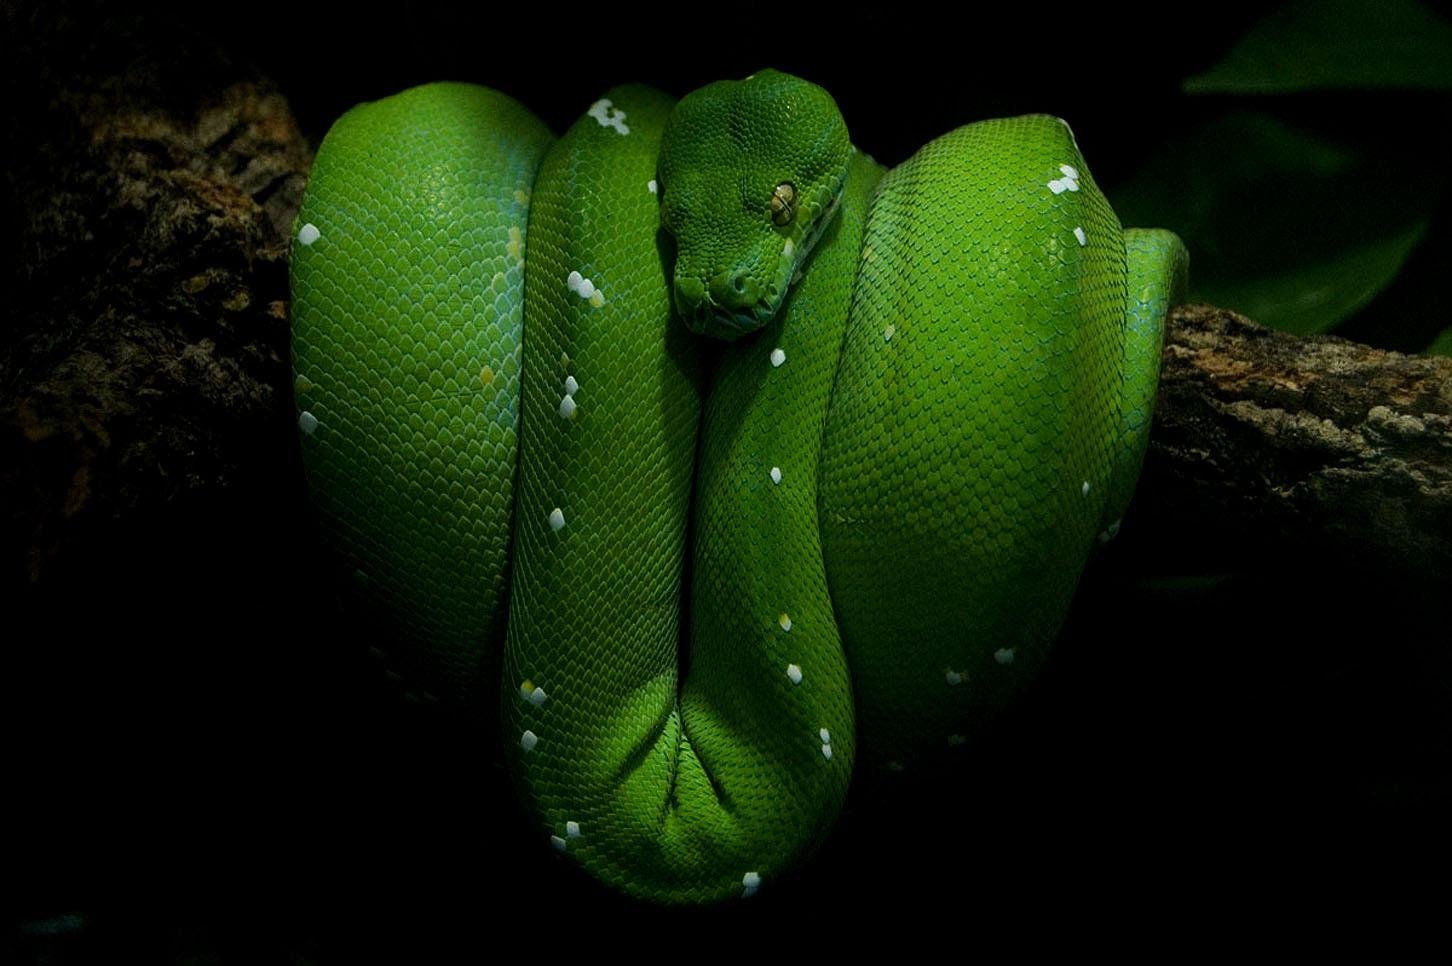 python wallpaper,schlange,schlange,glatte grünschlange,grün,reptil